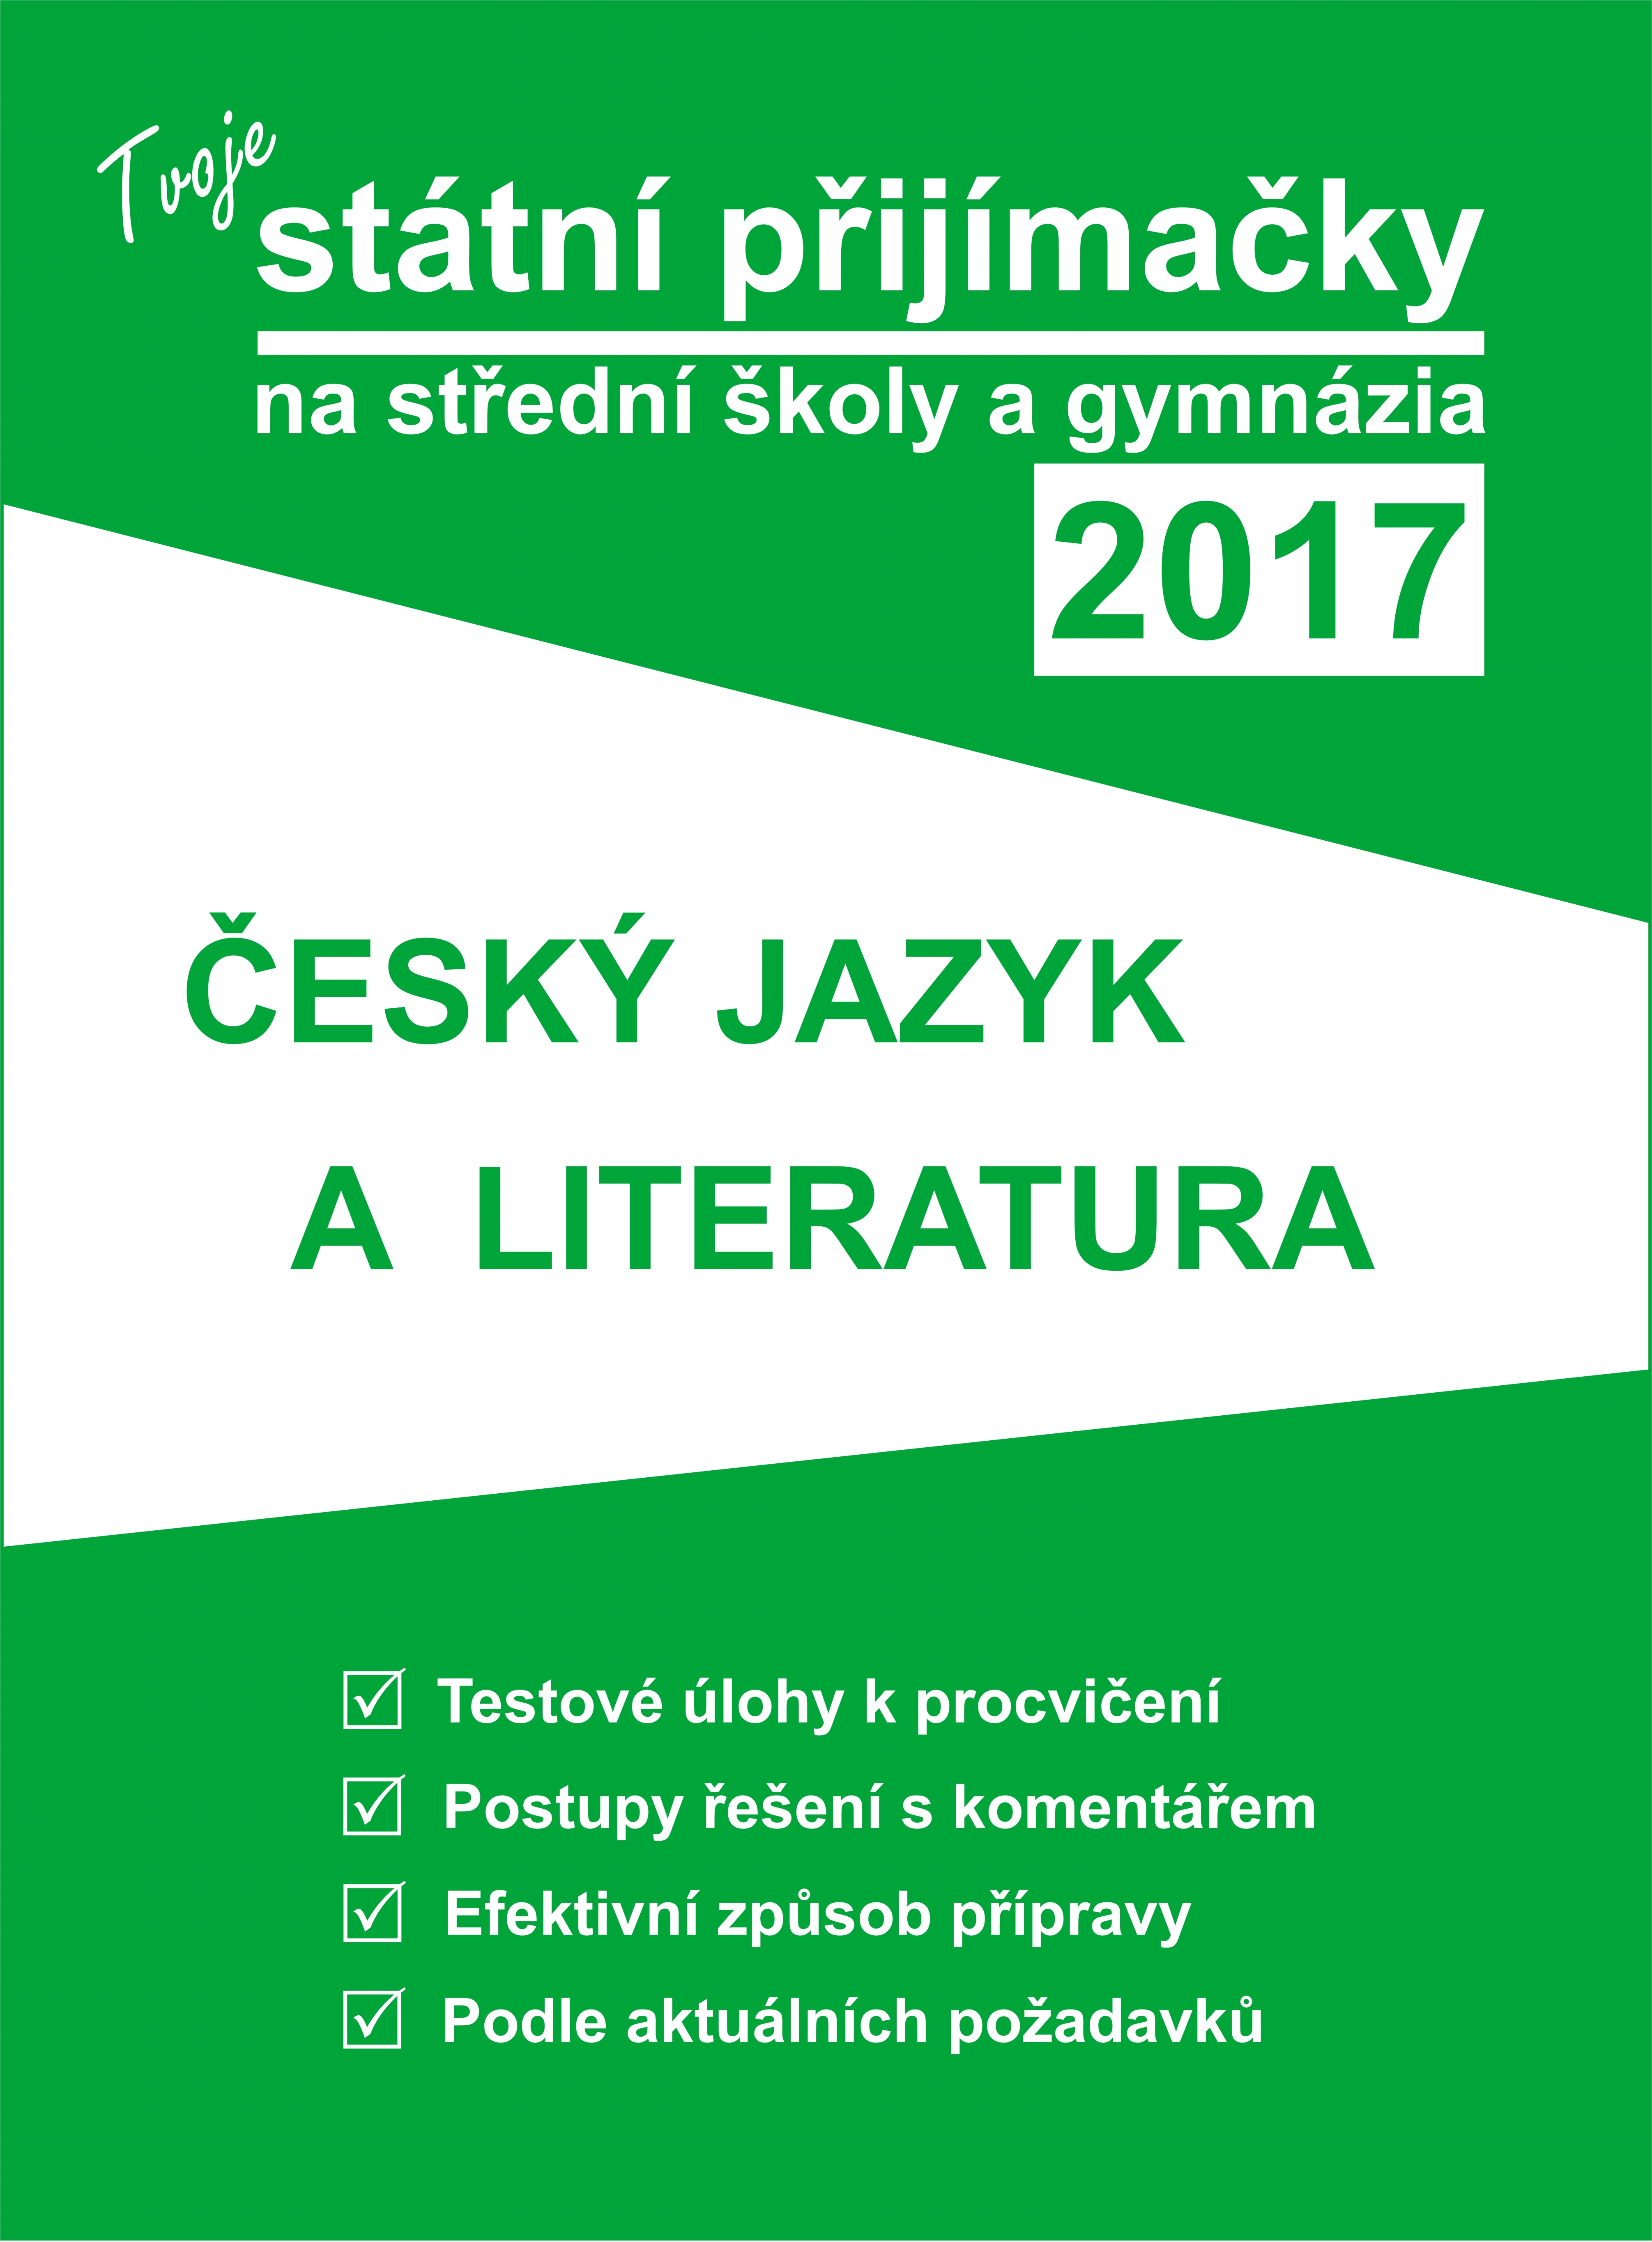 Tvoje státní přijímačky 2017: ČESKÝ JAZYK A LITERATURA